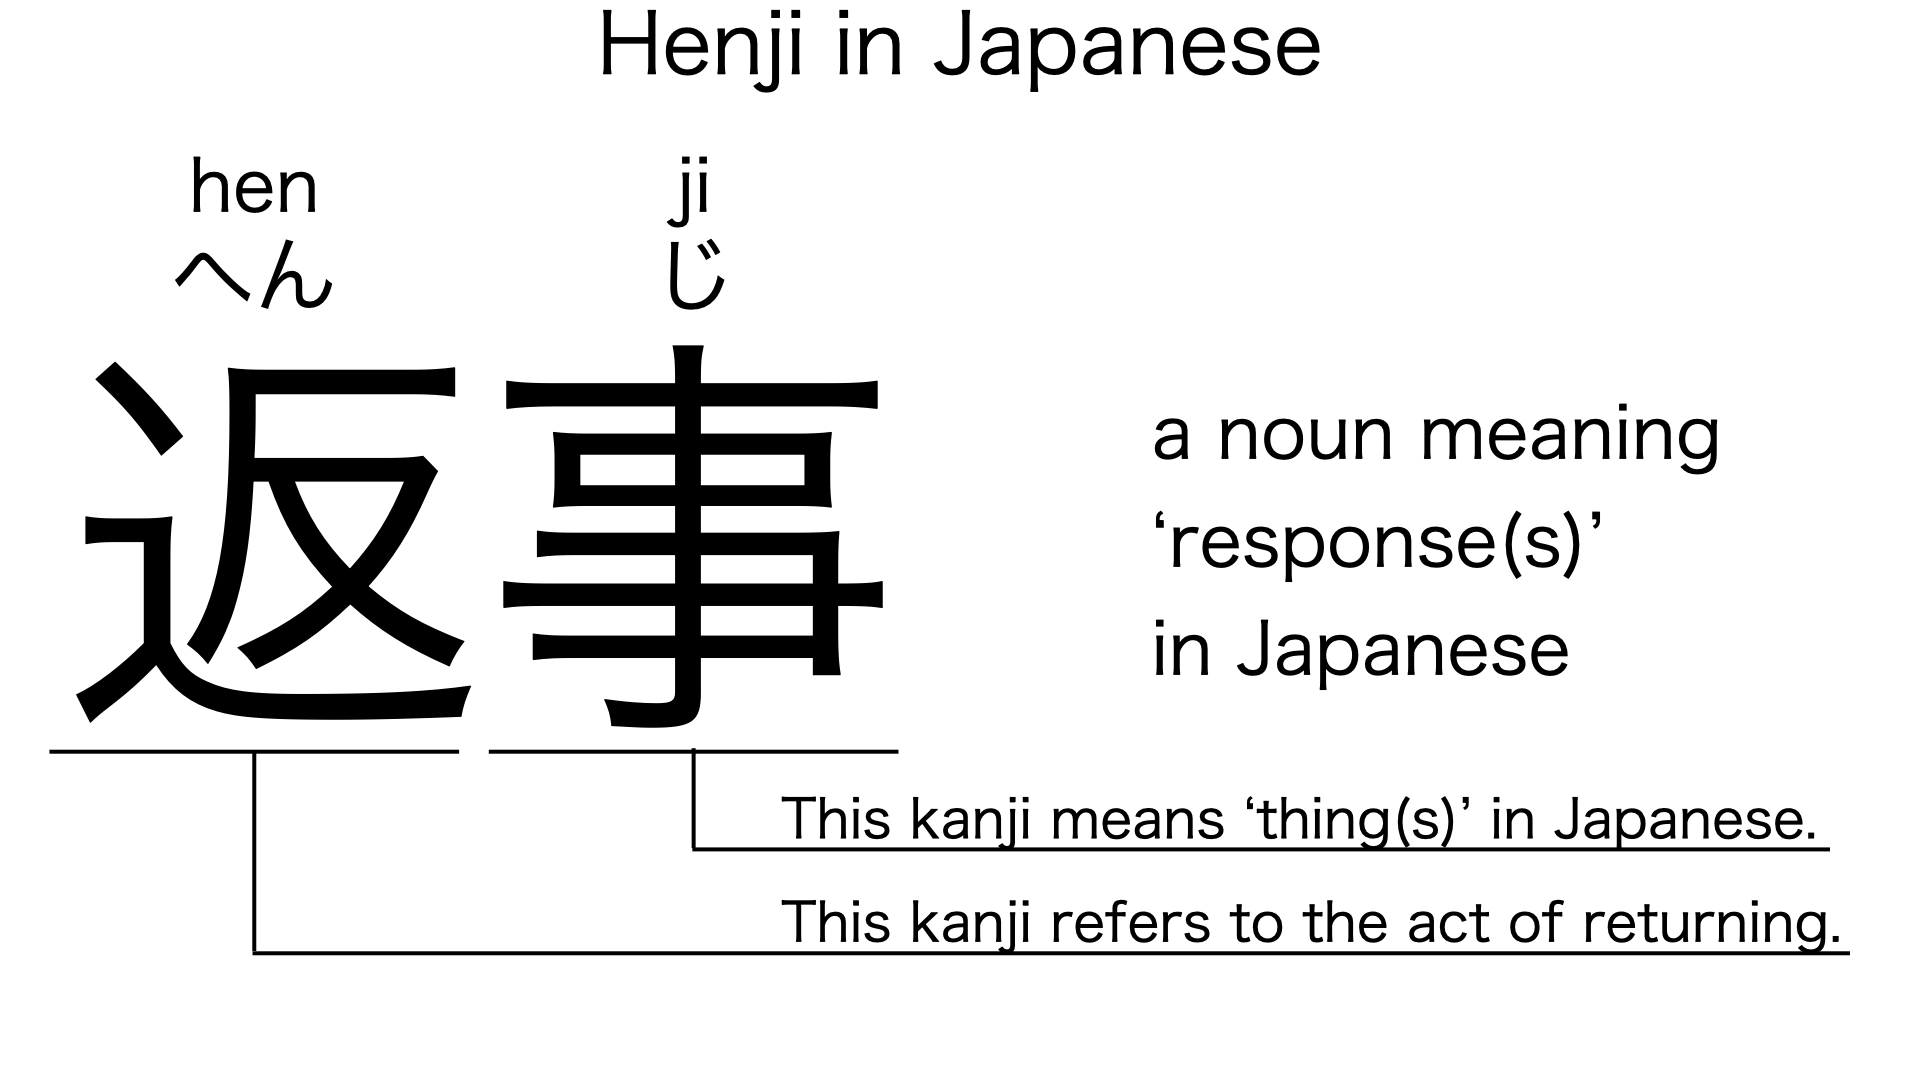 henji in japanese